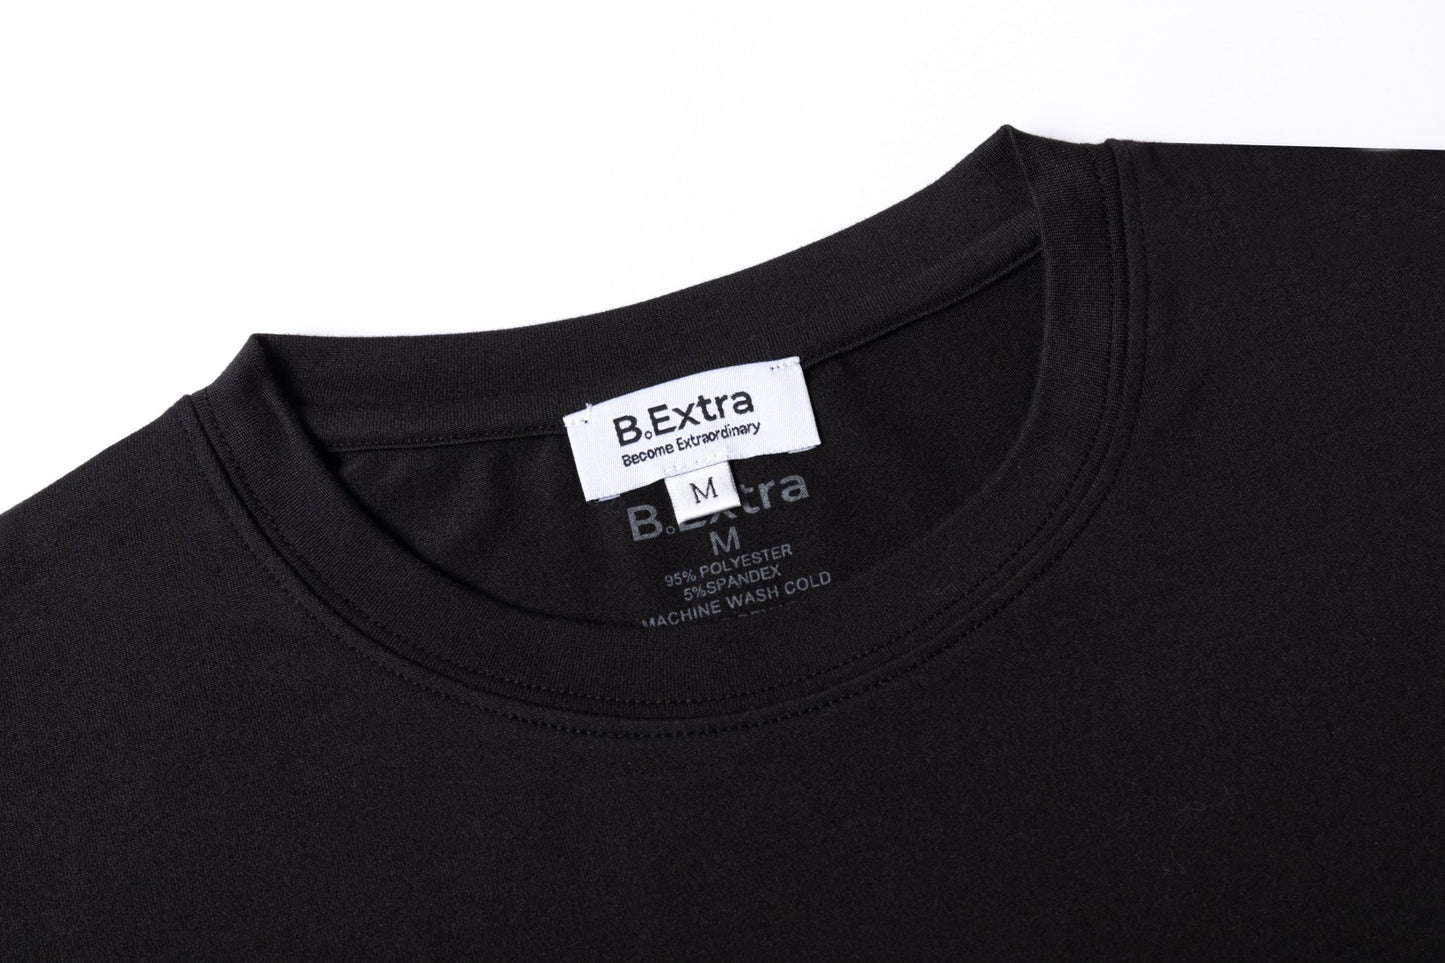 OG T Shirt - Black